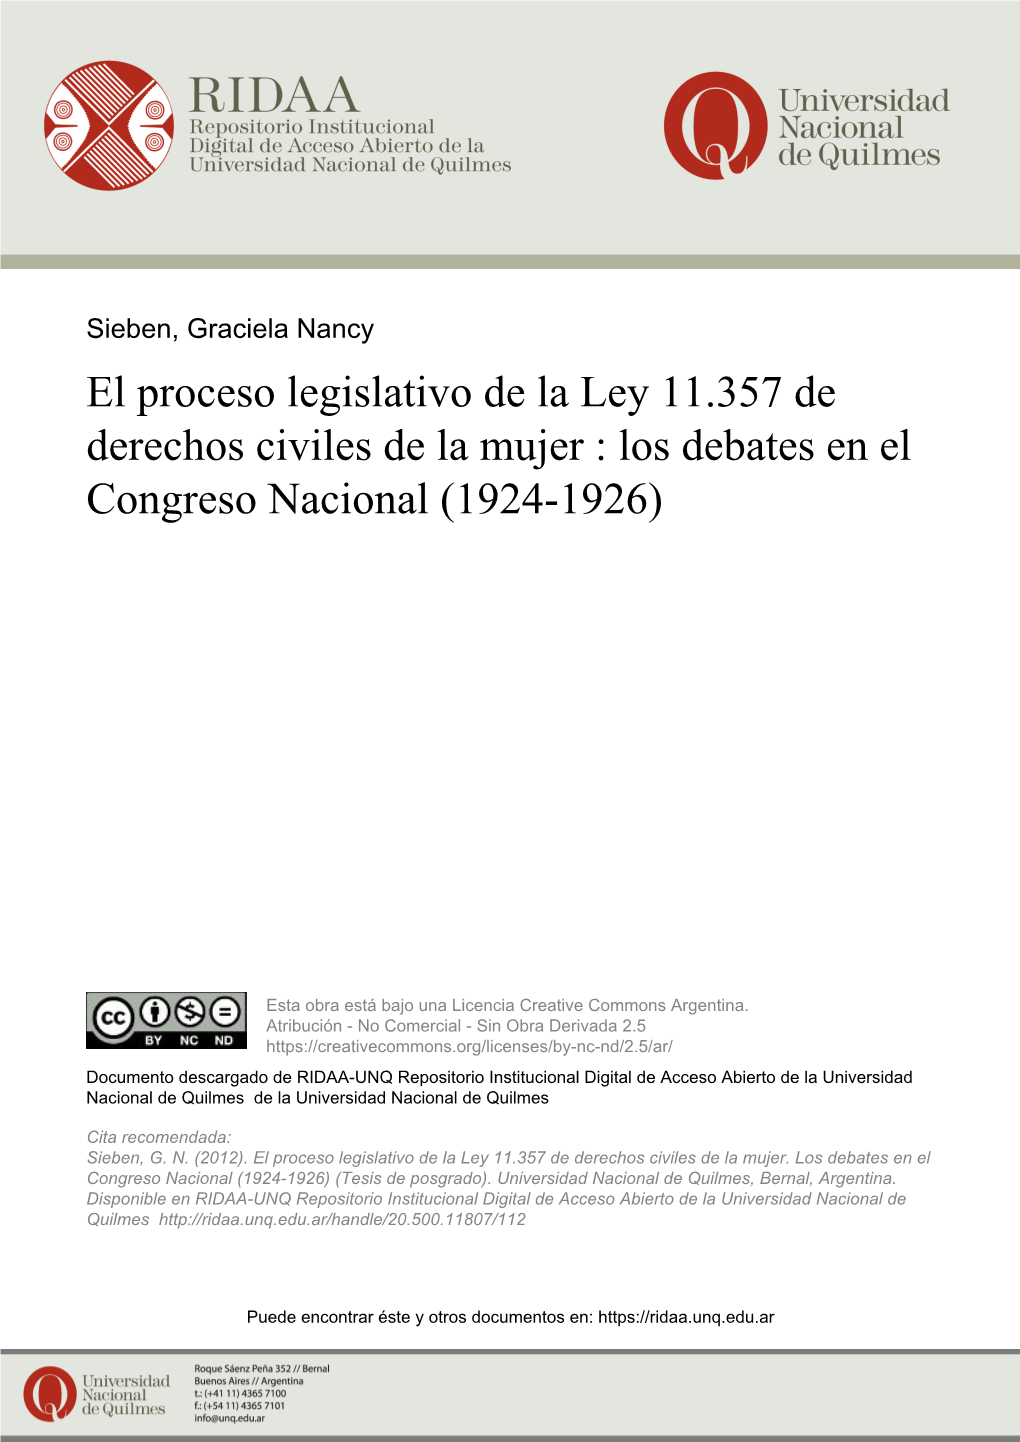 El Proceso Legislativo De La Ley 11.357 De Derechos Civiles De La Mujer : Los Debates En El Congreso Nacional (1924-1926)